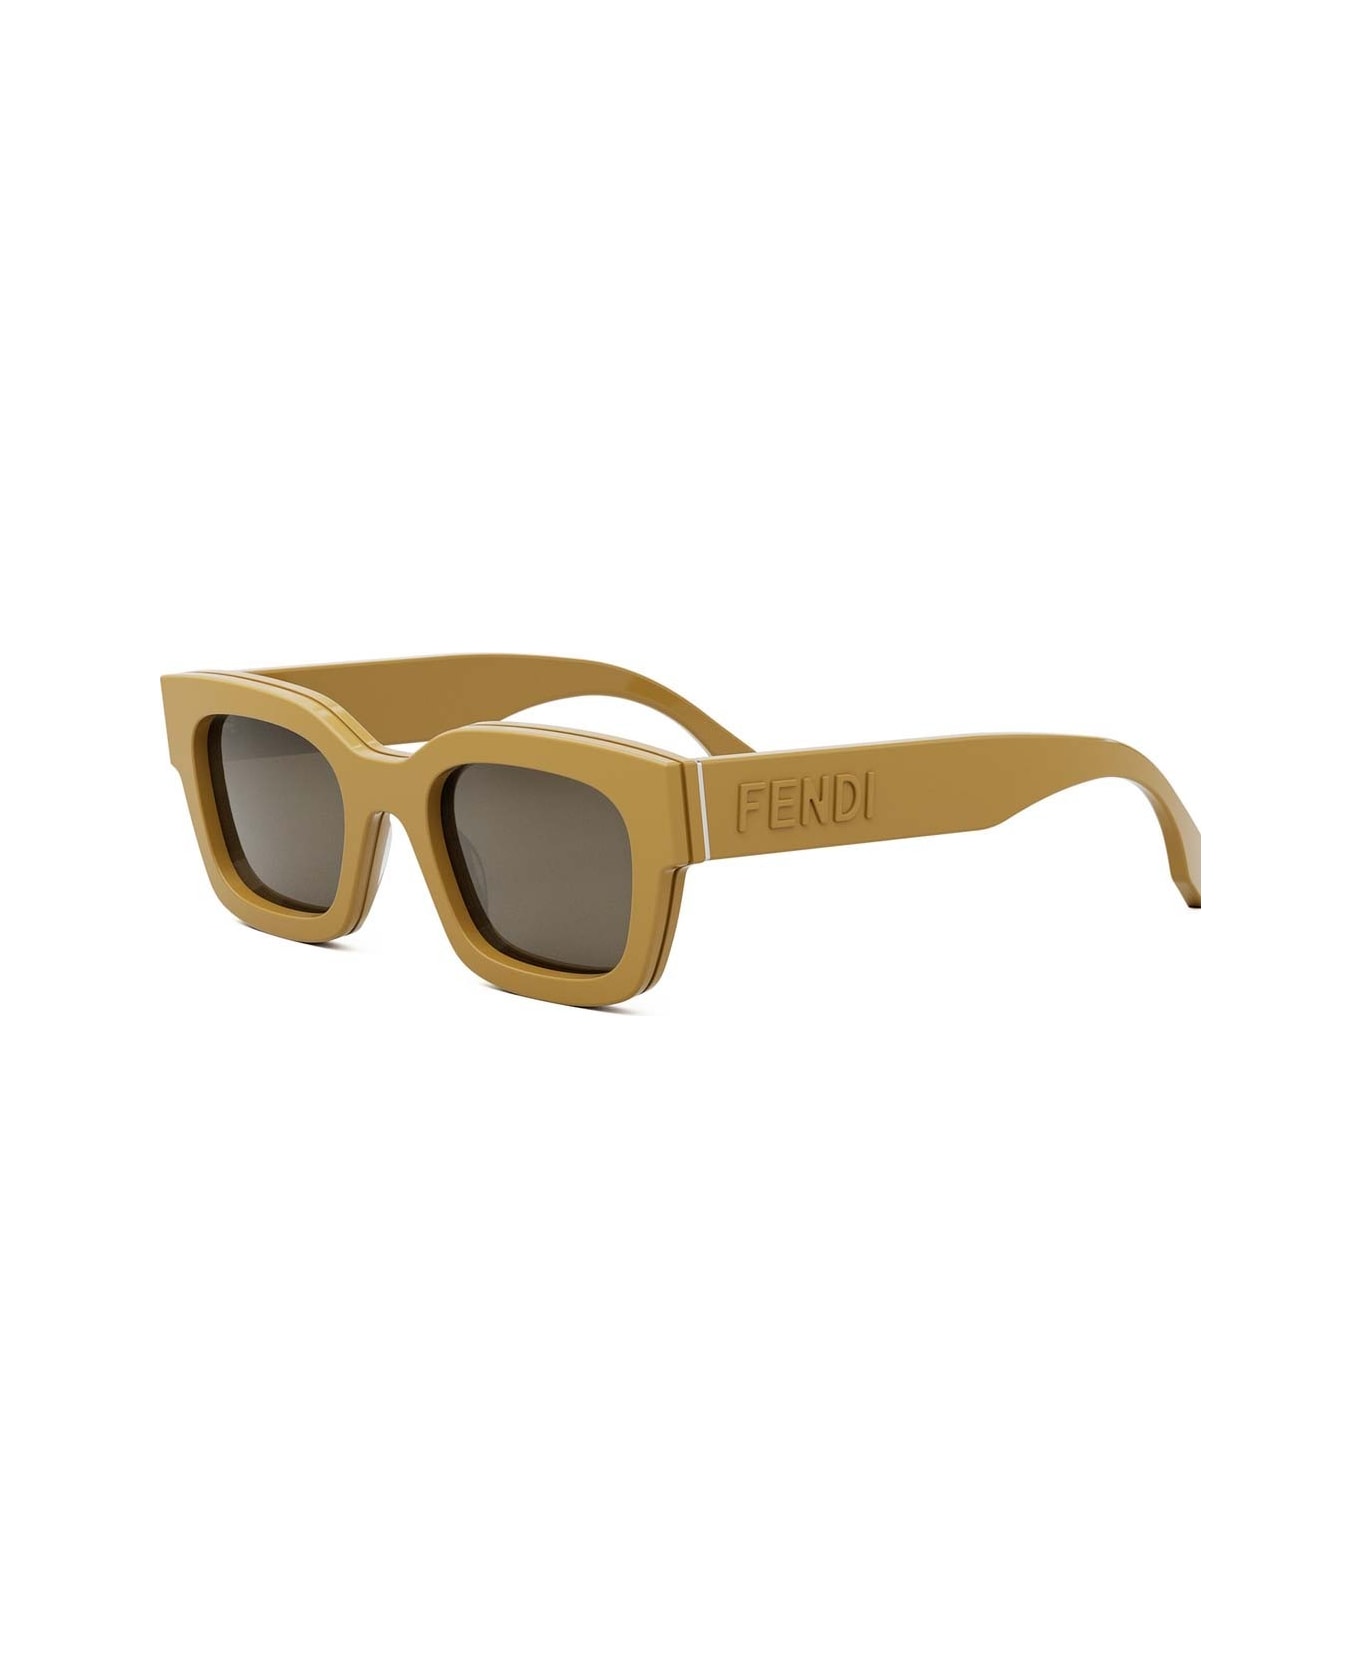 Fendi Eyewear Sunglasses - Giallo/Grigio サングラス